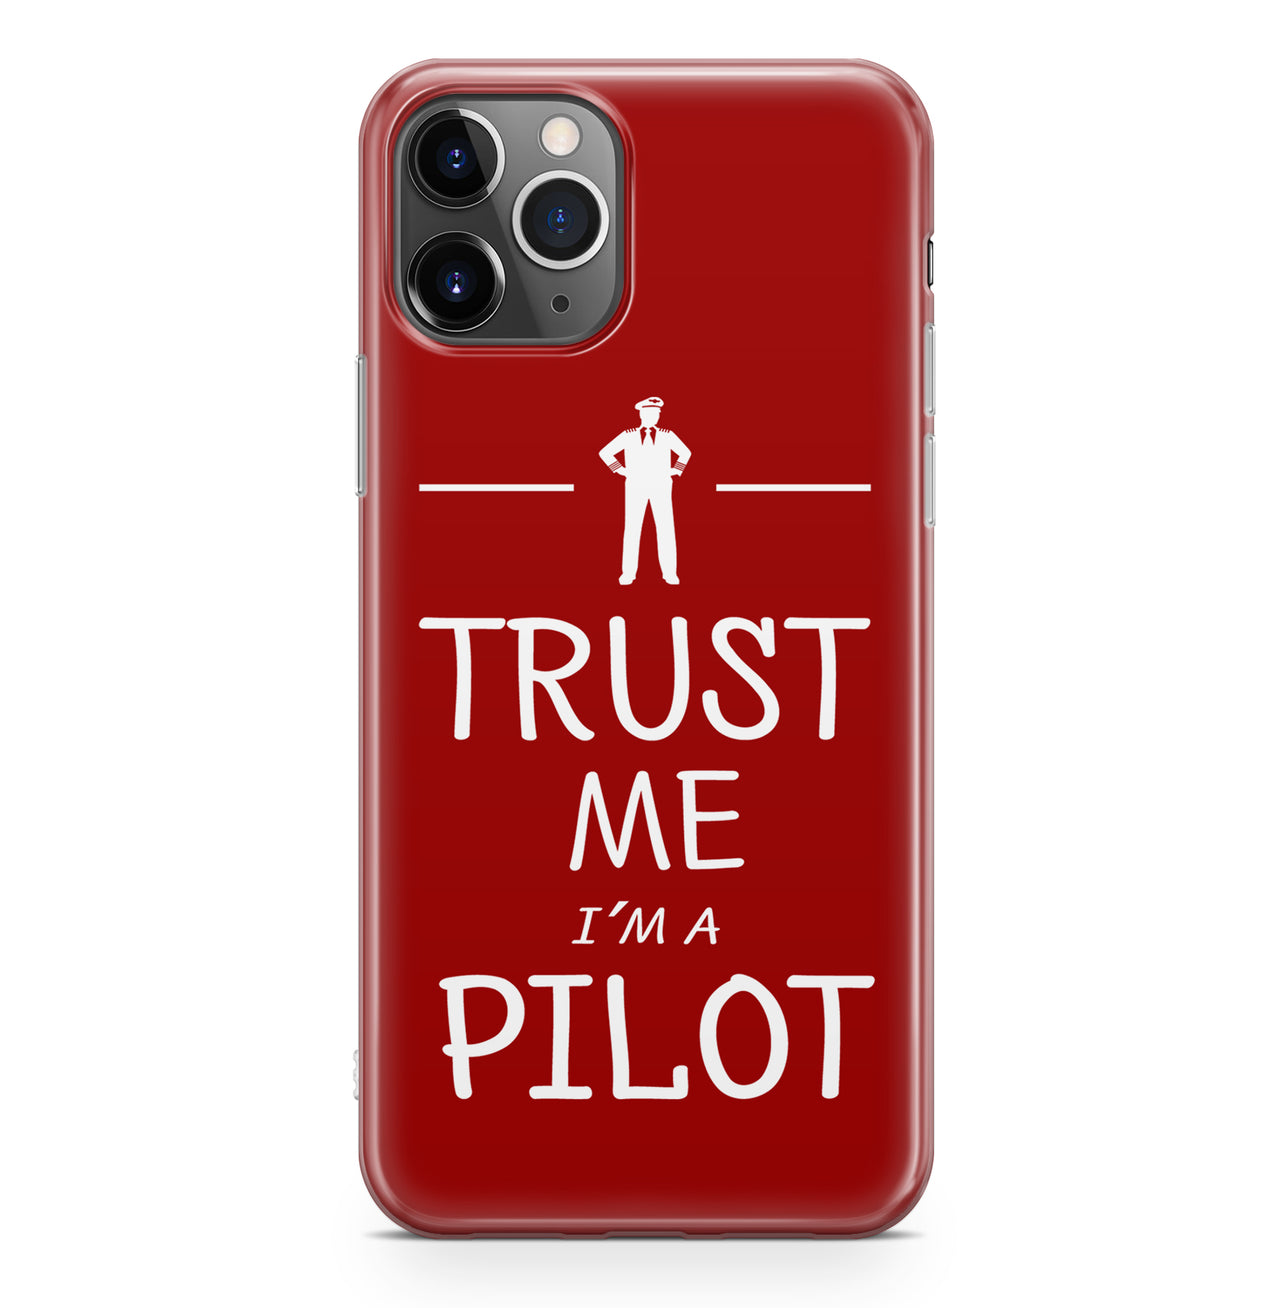 Trust Me I'm a Pilot Designed iPhone Cases